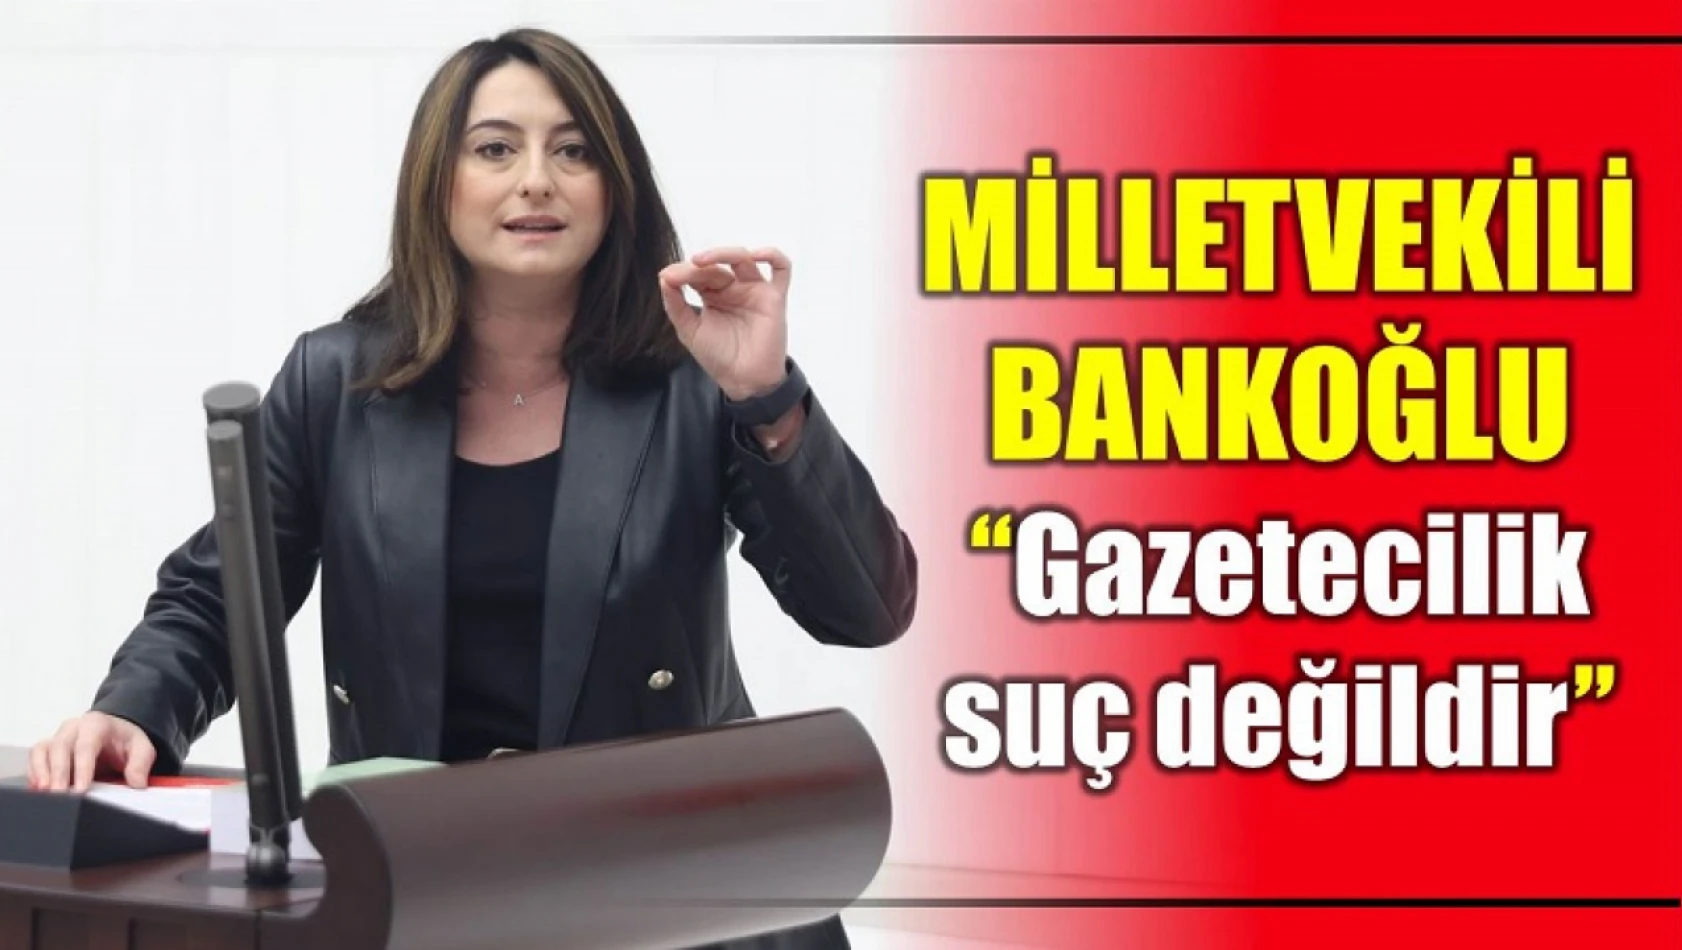 Milletvekili Bankoğlu, Gazetecilik suç değildir